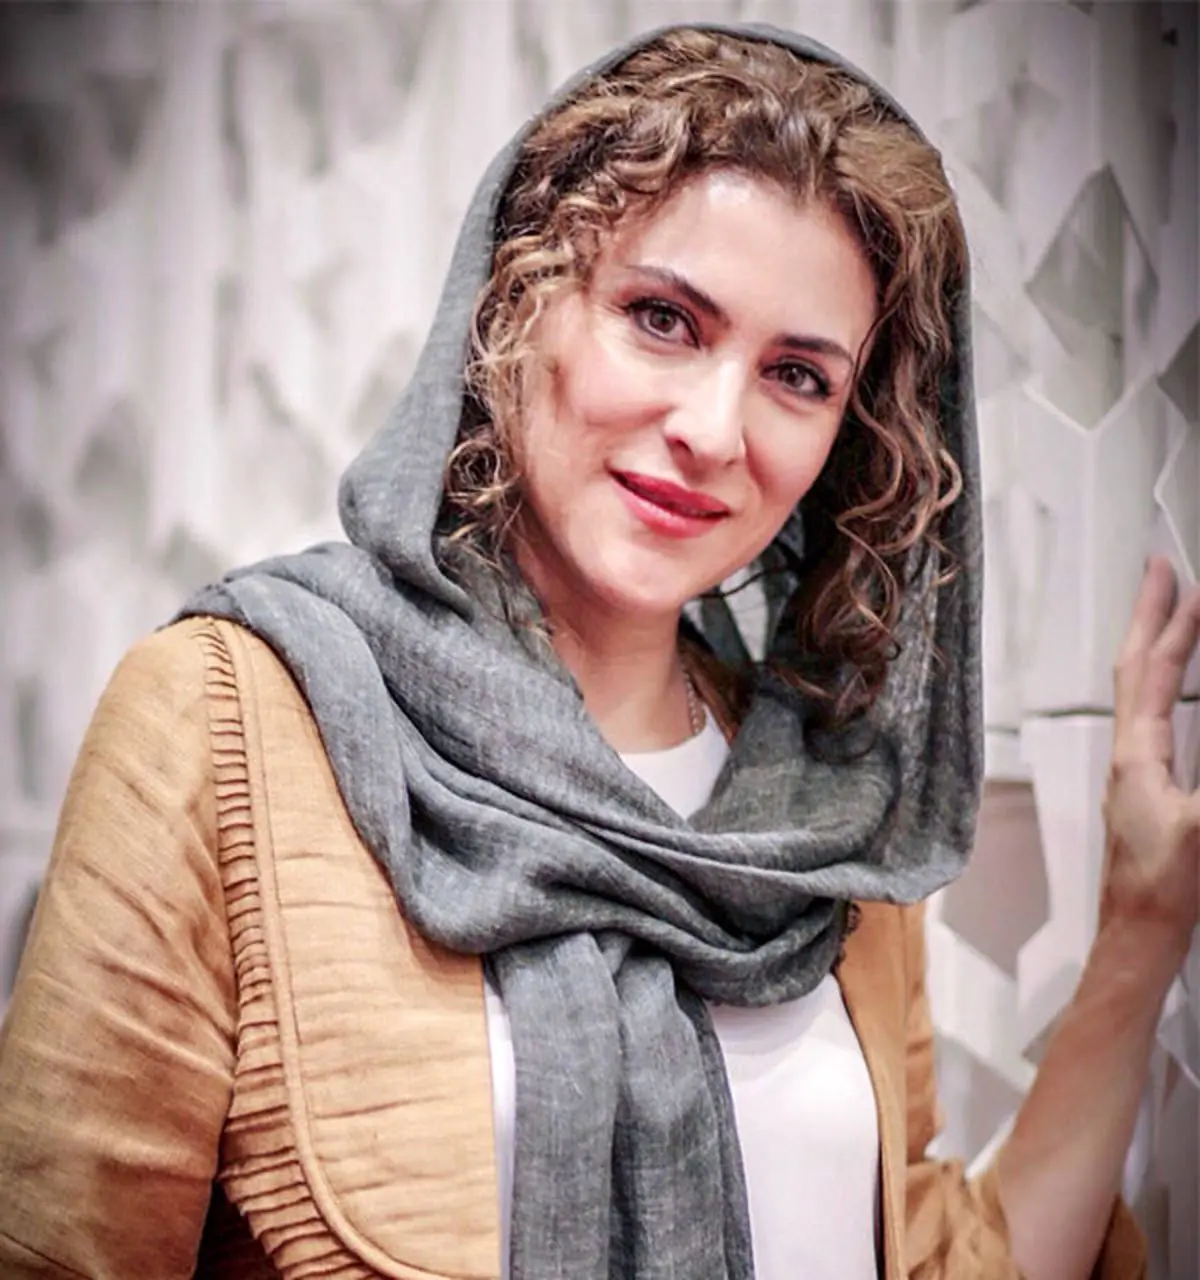 فیلمی کمتر دیده شده از ویشکا آسایش | مصاحبه دیدنی ویشکا آسایش پس از بازی در سریال امام علی (ع)